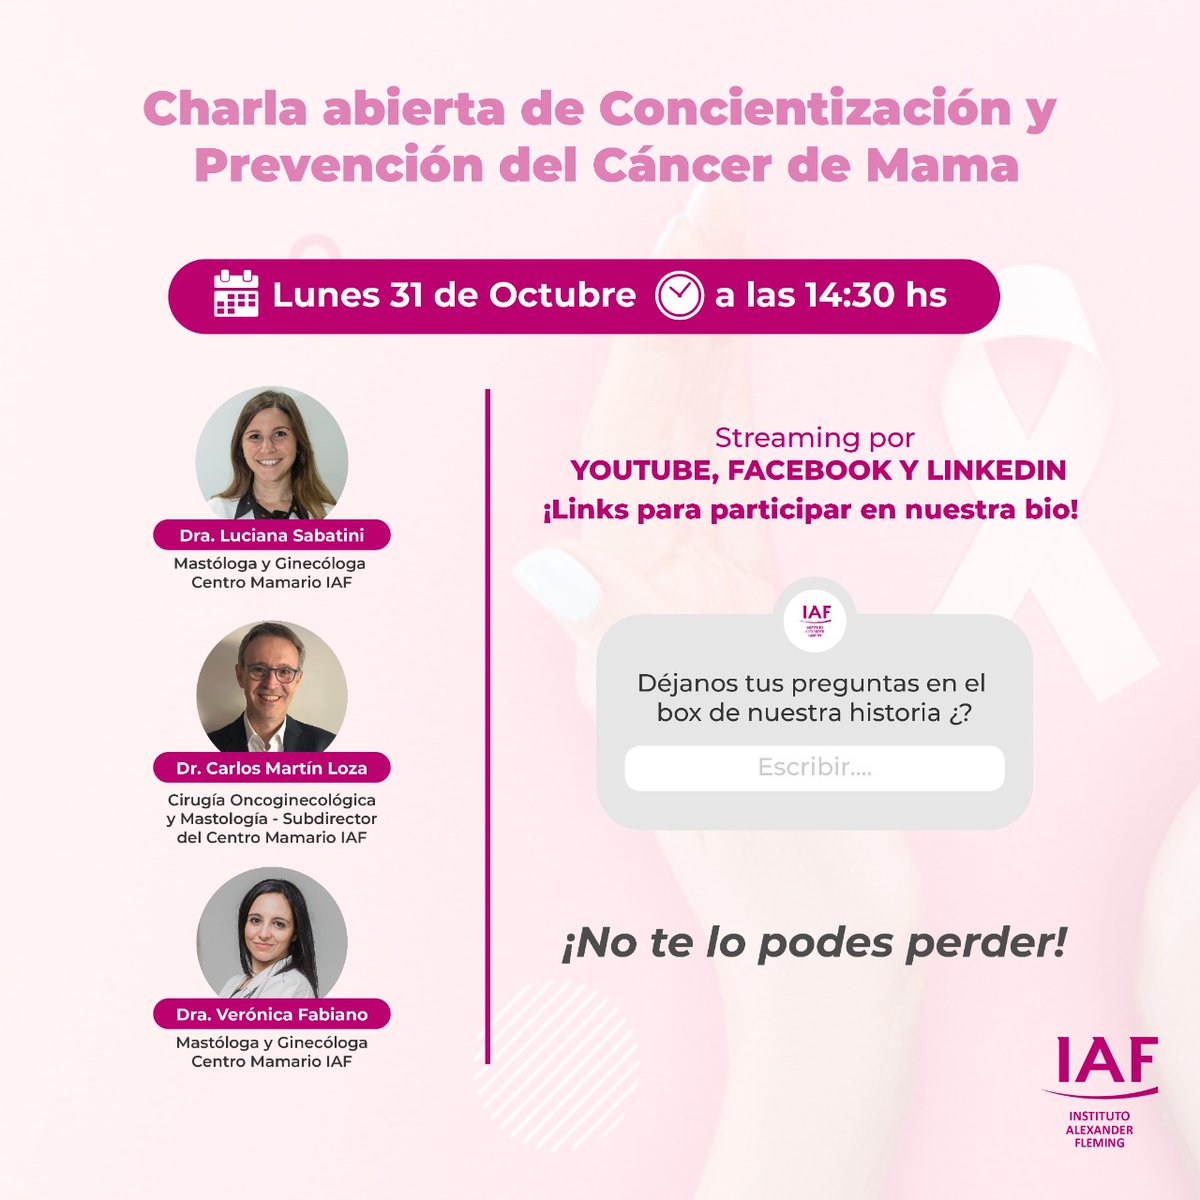 Desde #IAF queremos acerarte información útil de la mano de nuestros espcialistas. 🗓️ ¿Cuándo? El lunes 31 de octubre ⏰ A las 14:30 h (Argentina) ✅ ¡Sumate! #Charlas #CharlasInformativas #MesRosa #CancerDeMama #CharlasPorStreaming #Lives #SabemosComoCuidarte